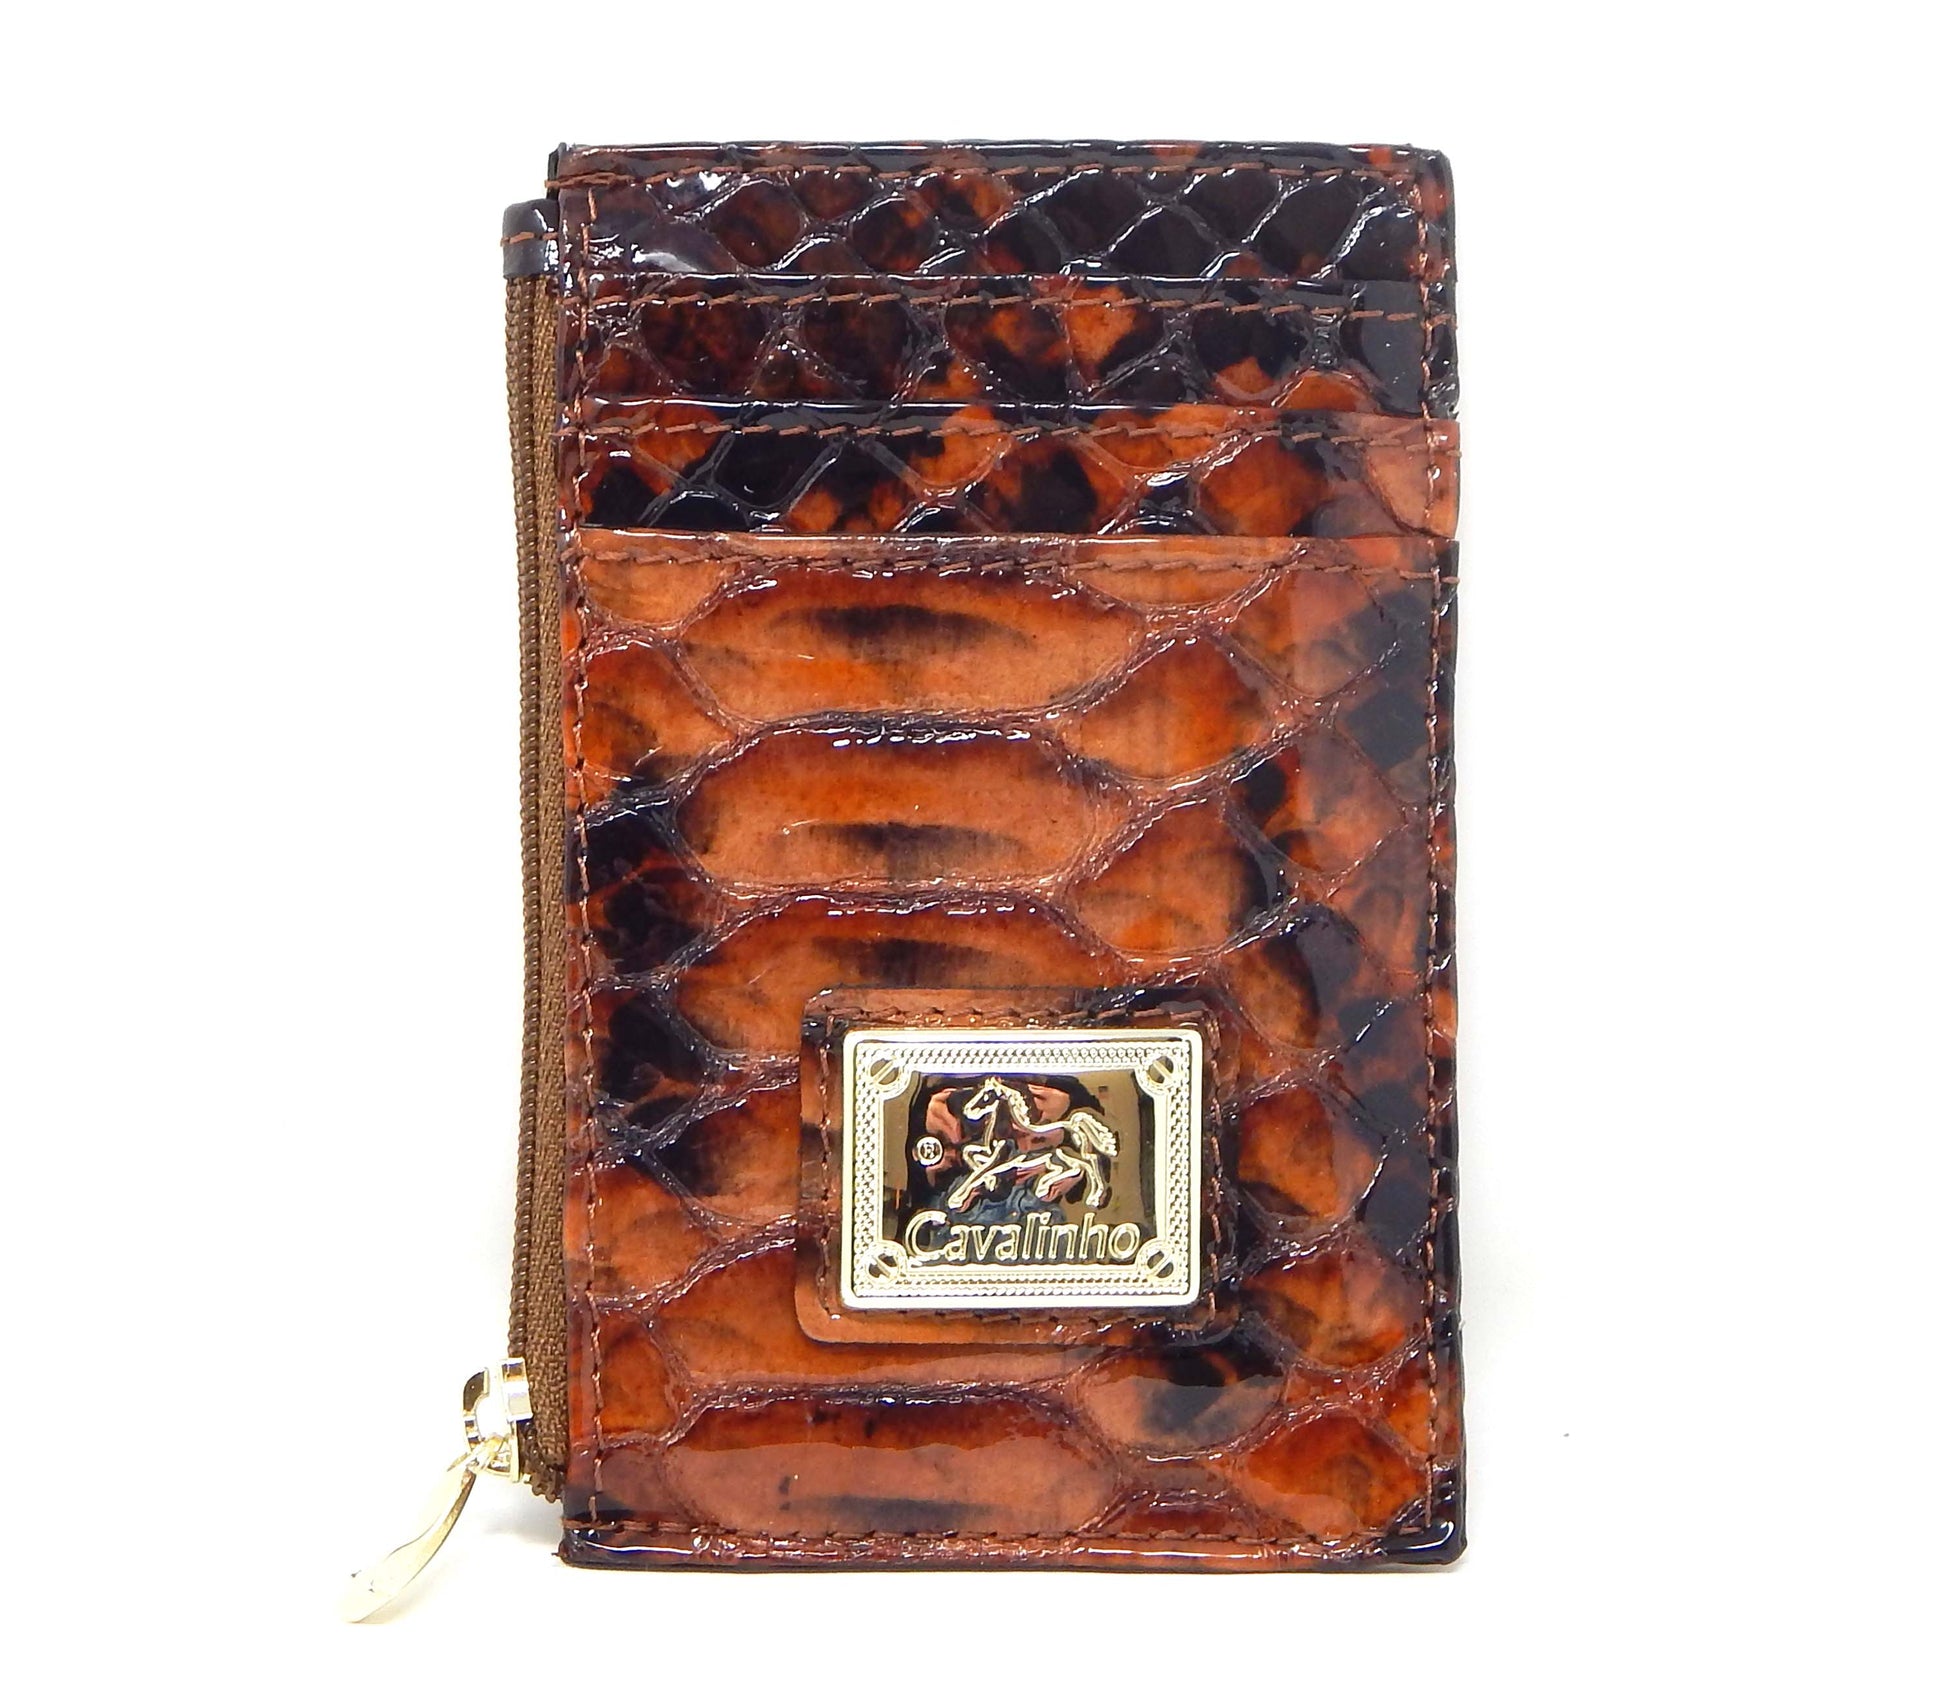 Cavalinho Gallop Leather Card Holder Slim Wallet - SaddleBrown - 28170573.13.99_1